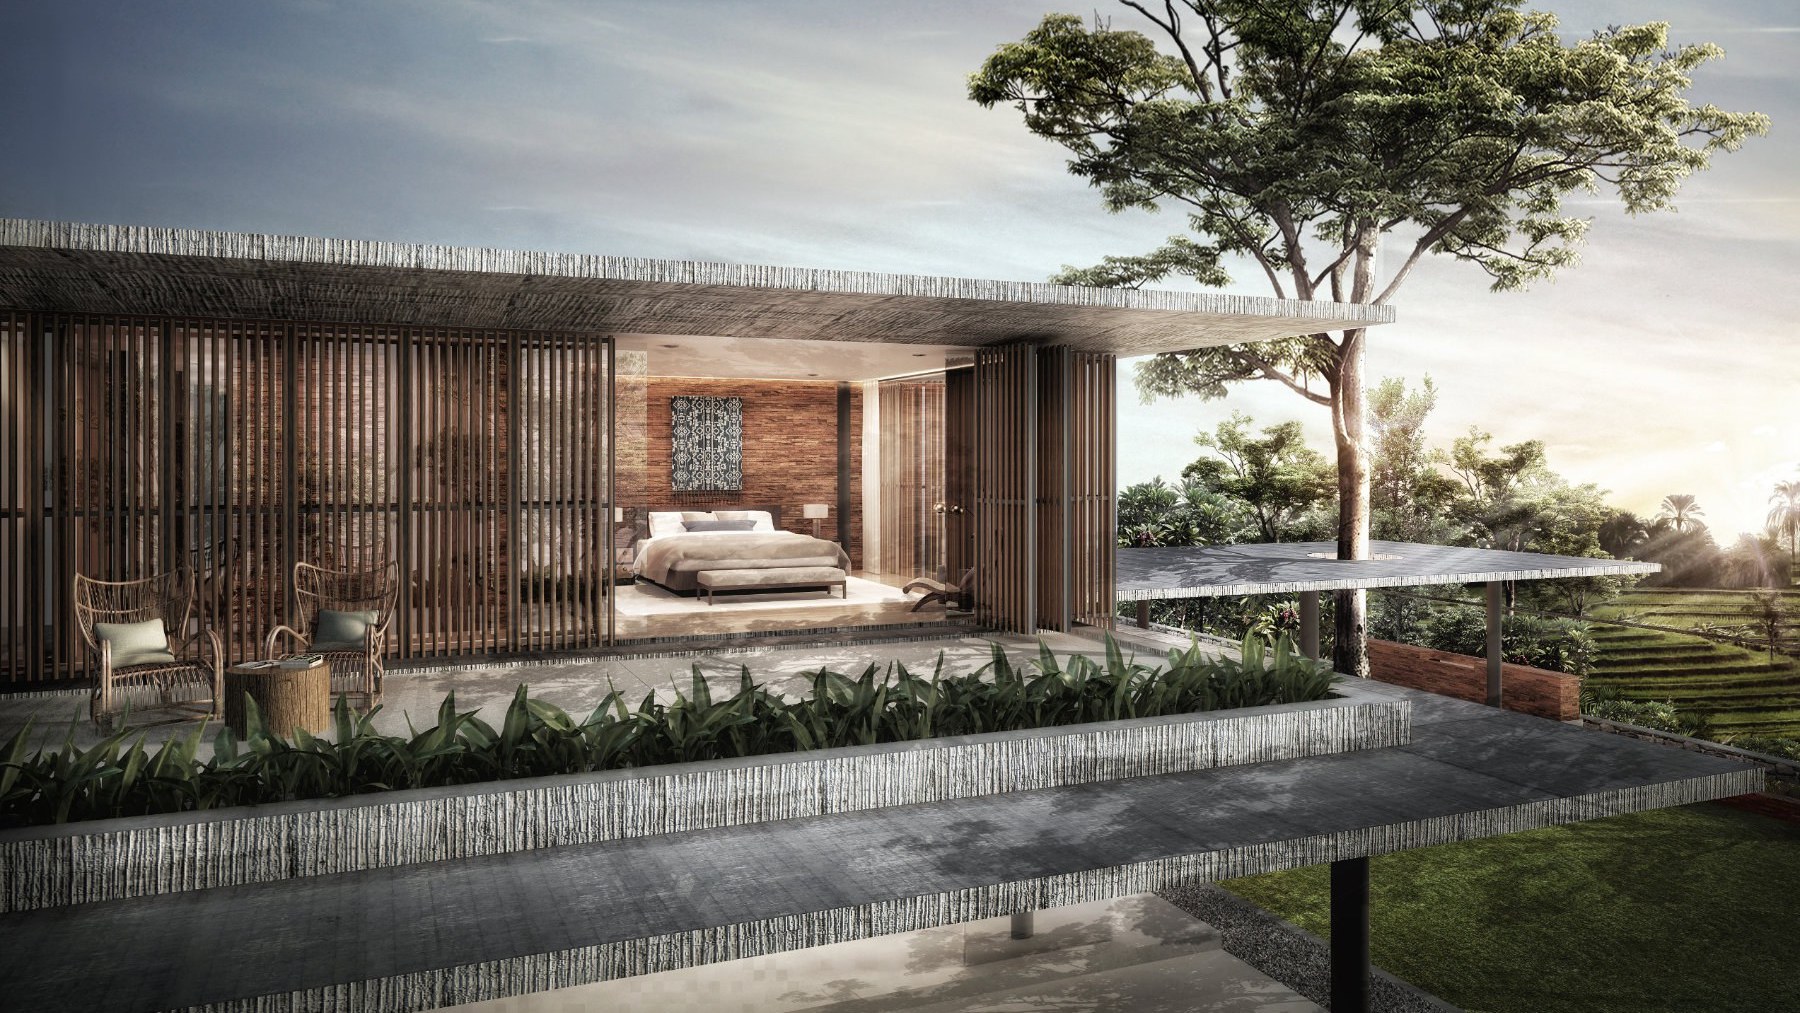 Design Assembly - Kedara House - Bali Architect - Interior Design - Bali Villa - Bedroom - Wooden Facade - Building Facade